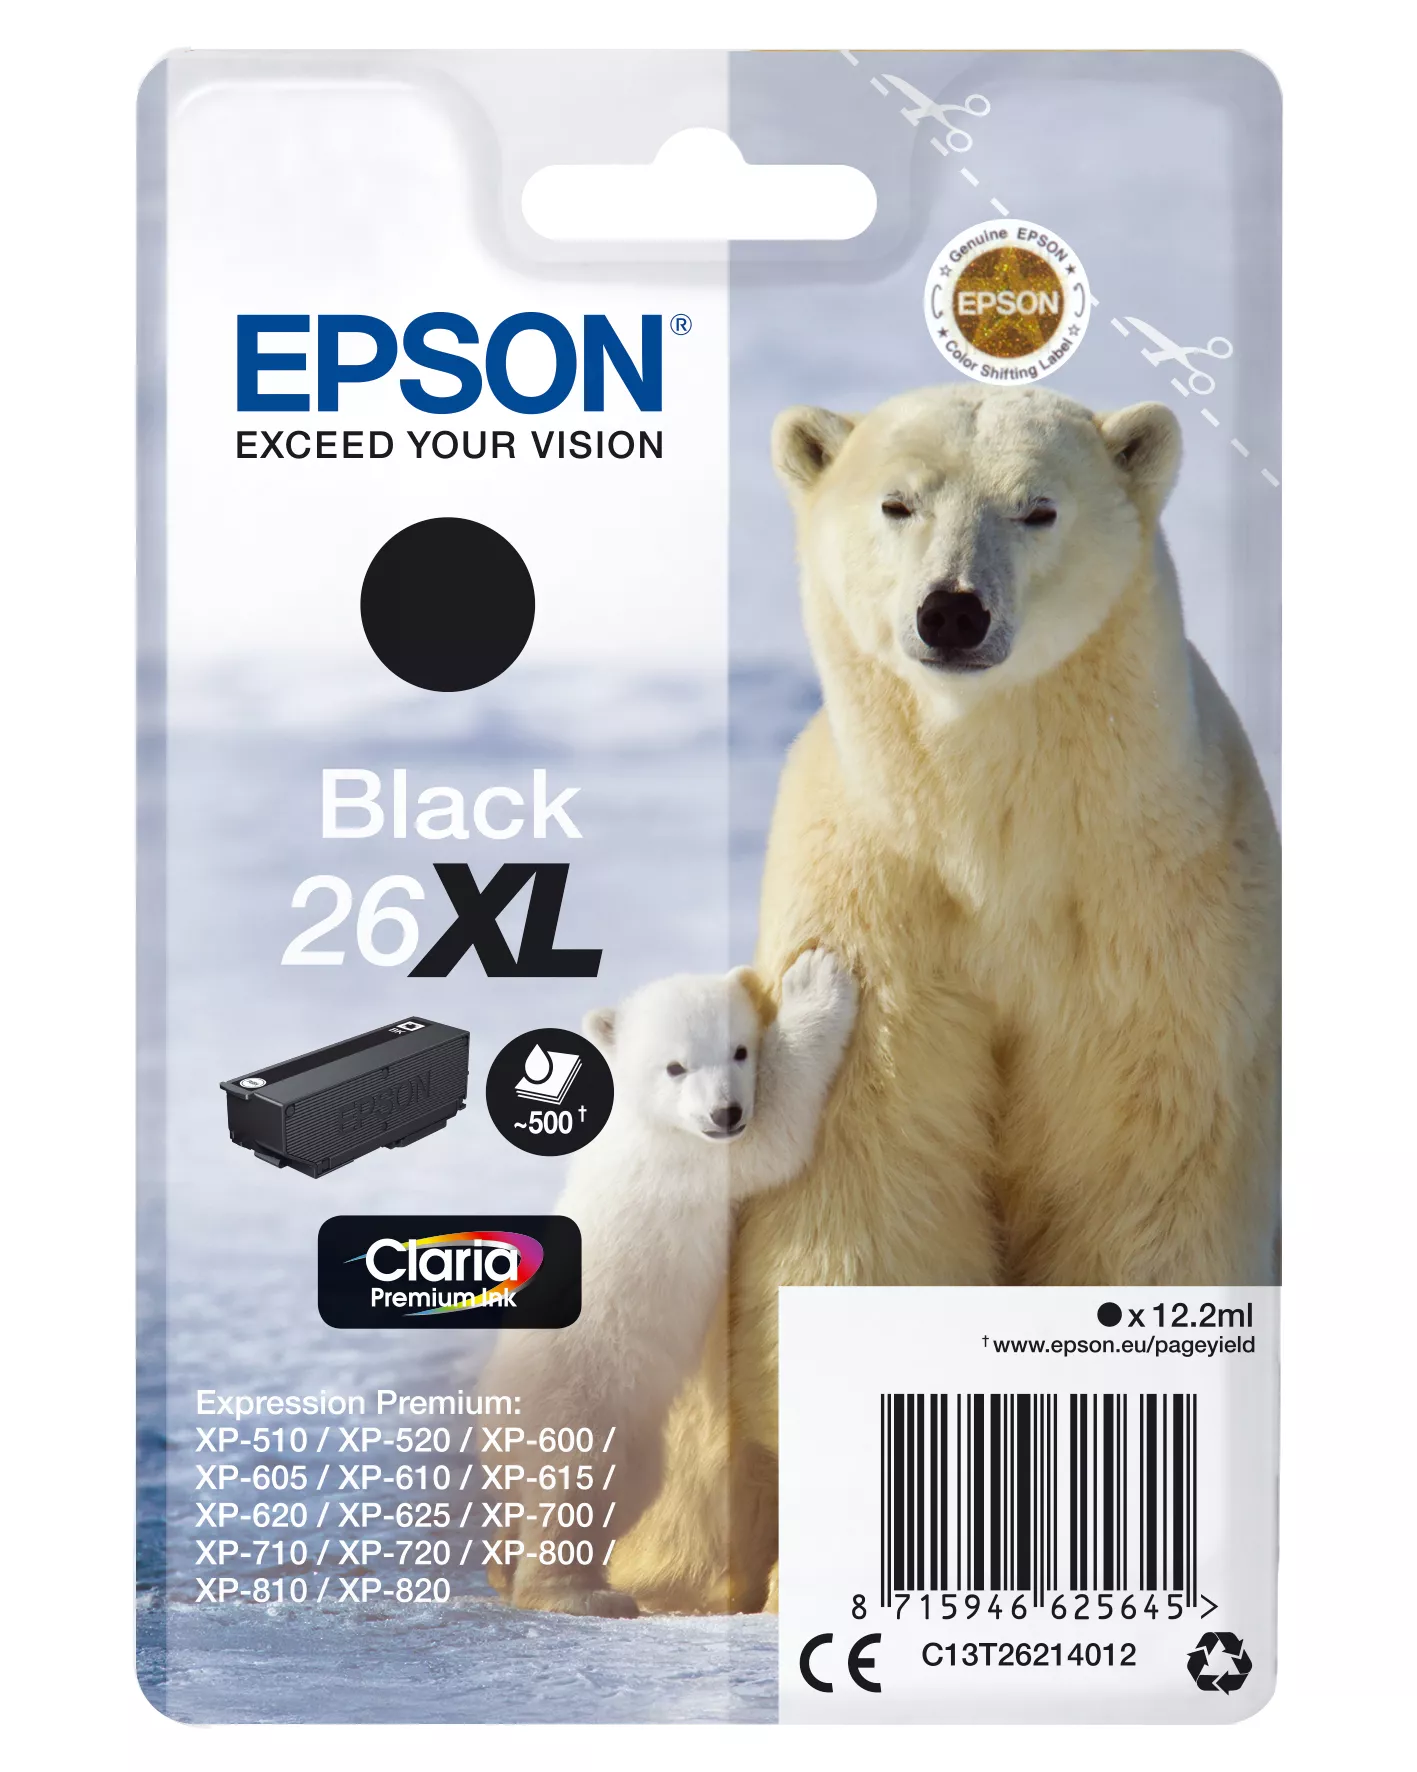 Achat EPSON 26XL cartouche d encre noir haute capacité 12.2ml sur hello RSE